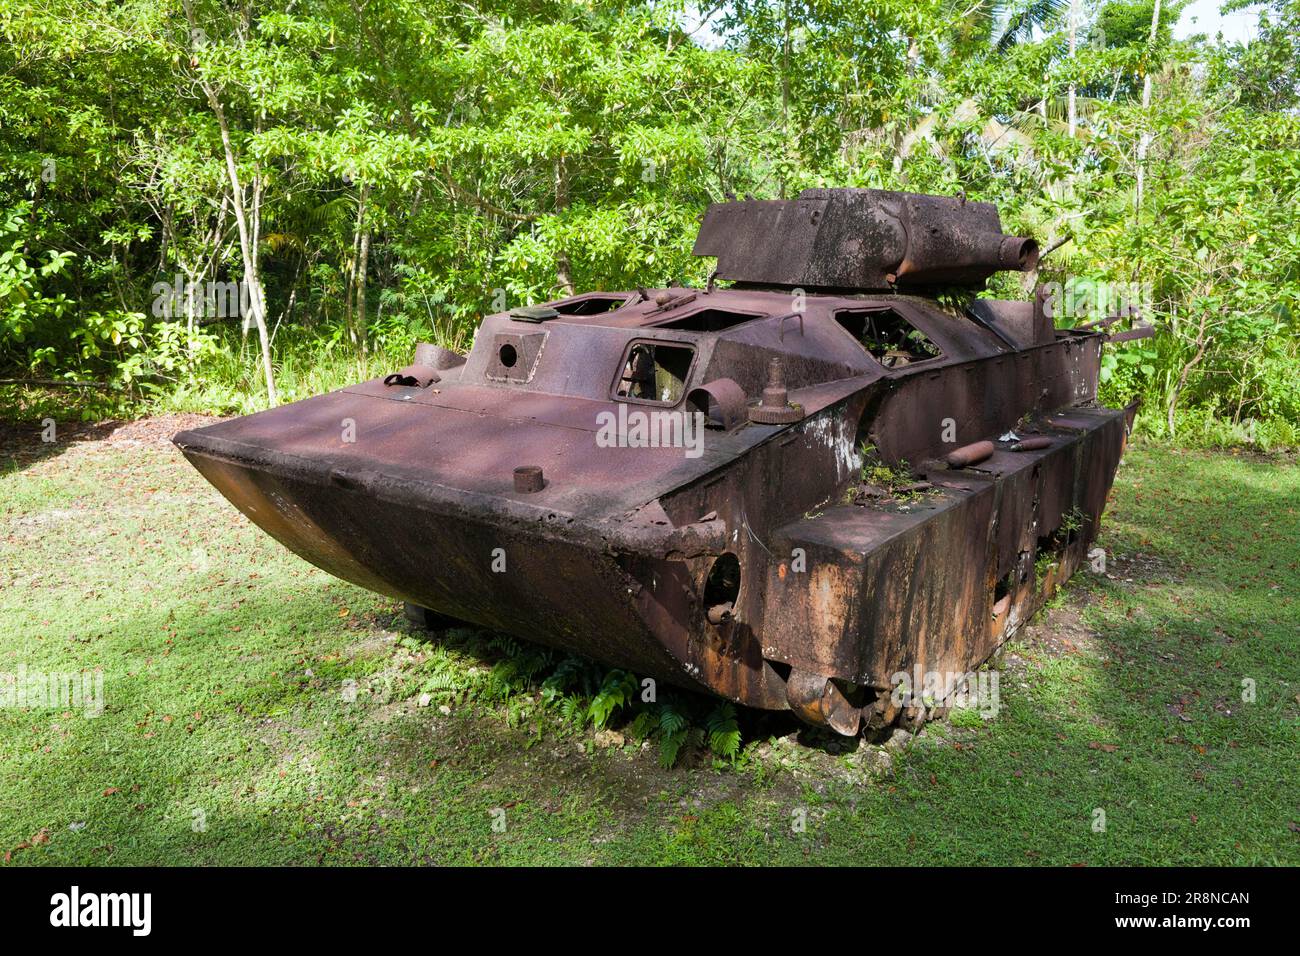 Japanese amphibian tank from World War 2, Peleliu Island, Palau, Micronesia Stock Photo